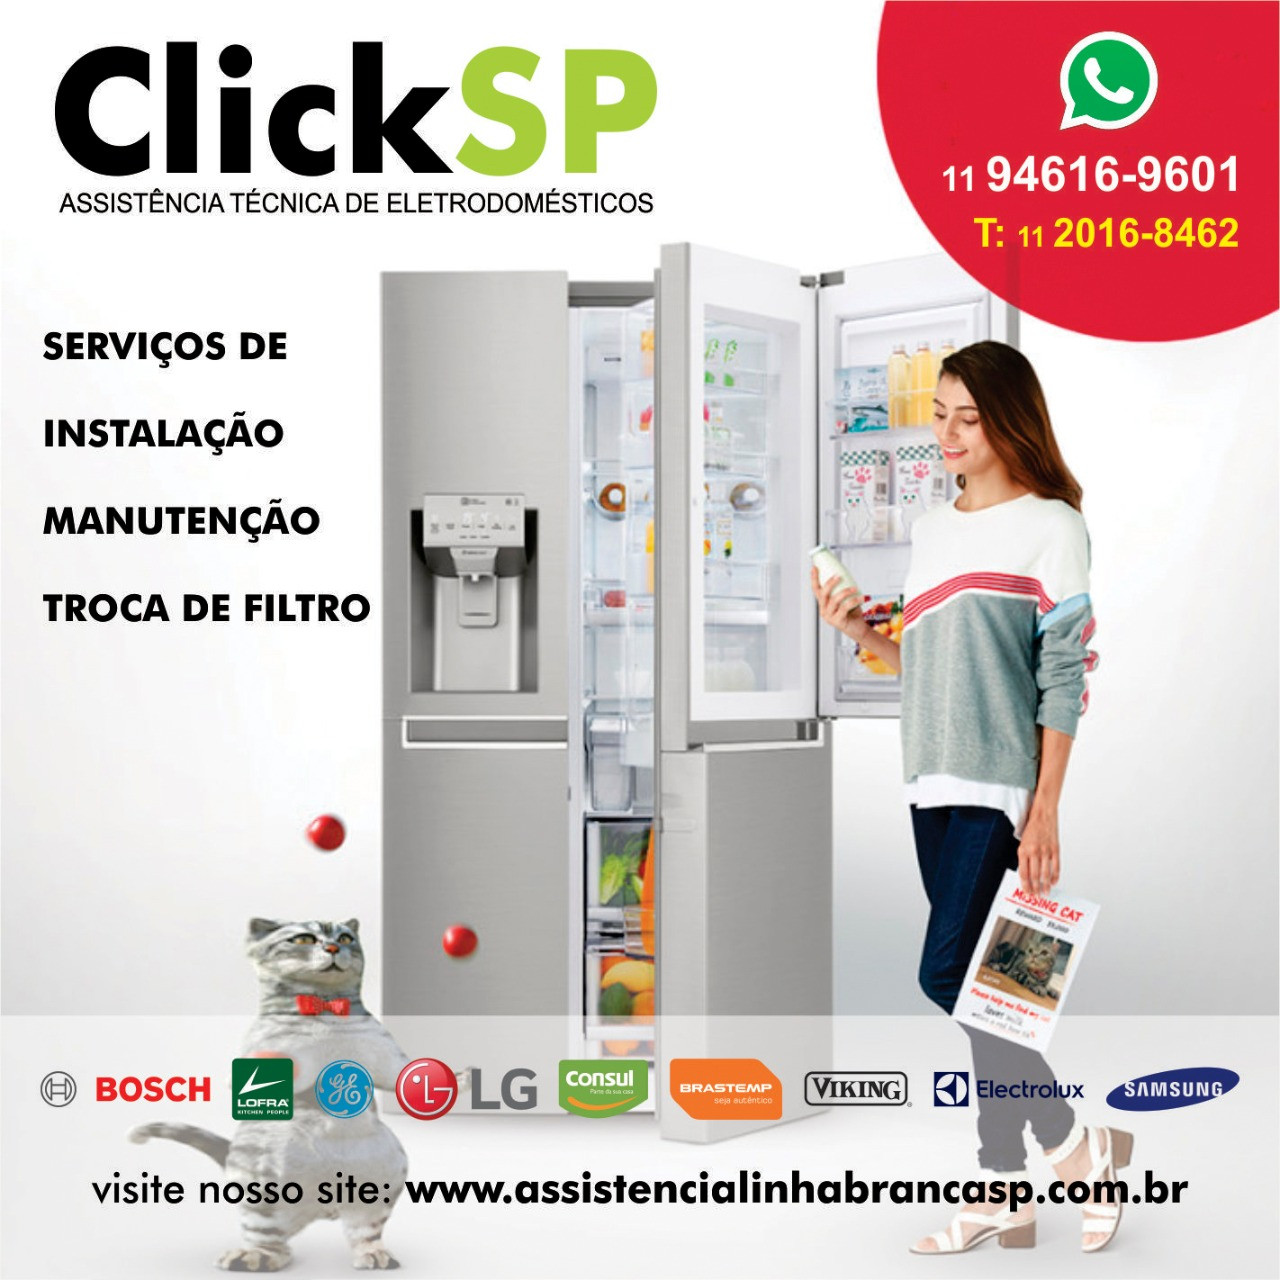 Manutenção refrigerador é com a ClickSP